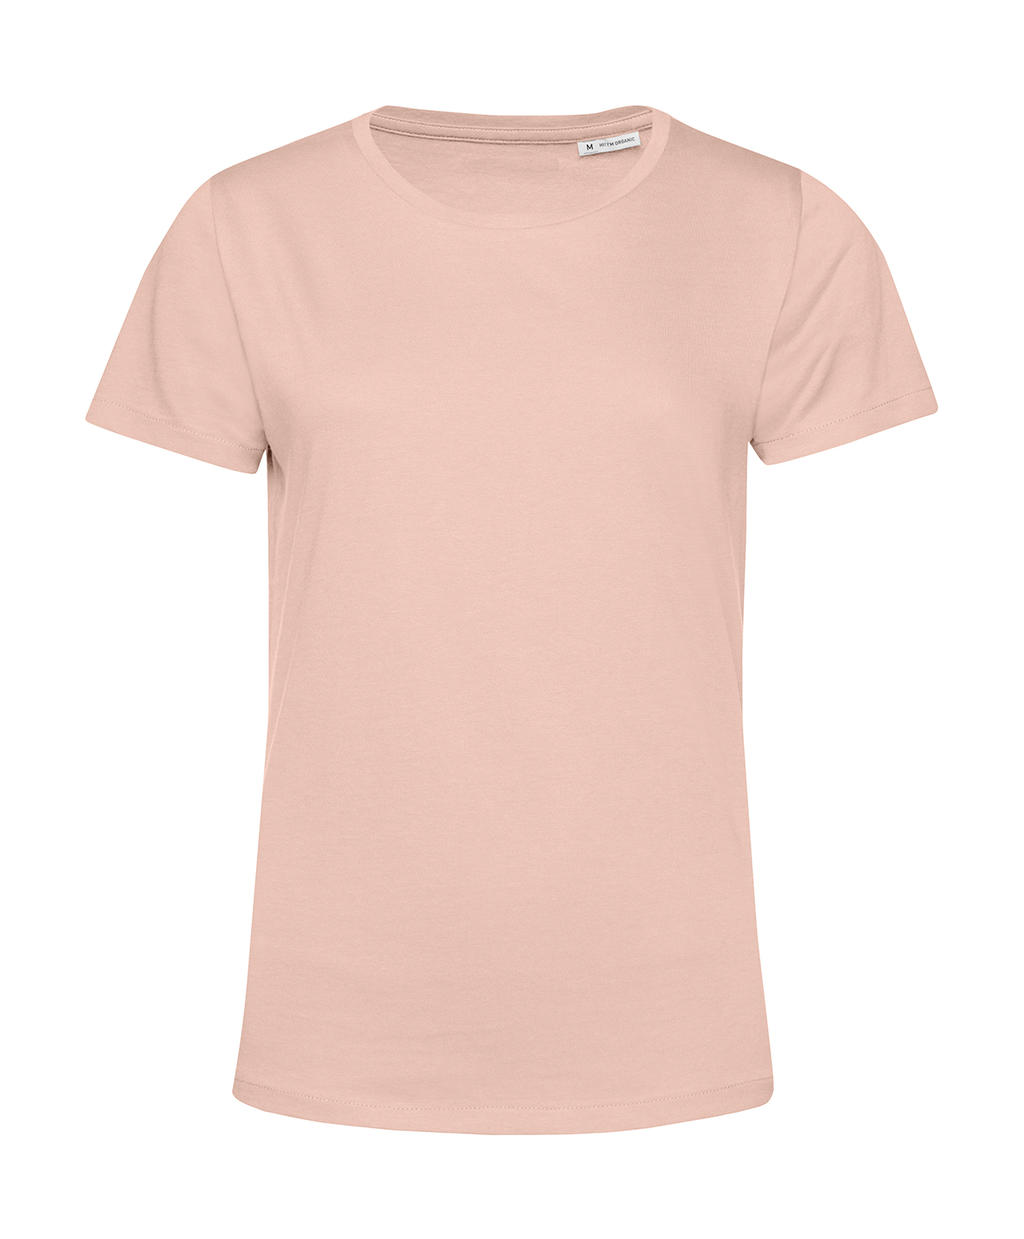 Tričko dámské BC Organic Inspire E150 - světle růžové, S